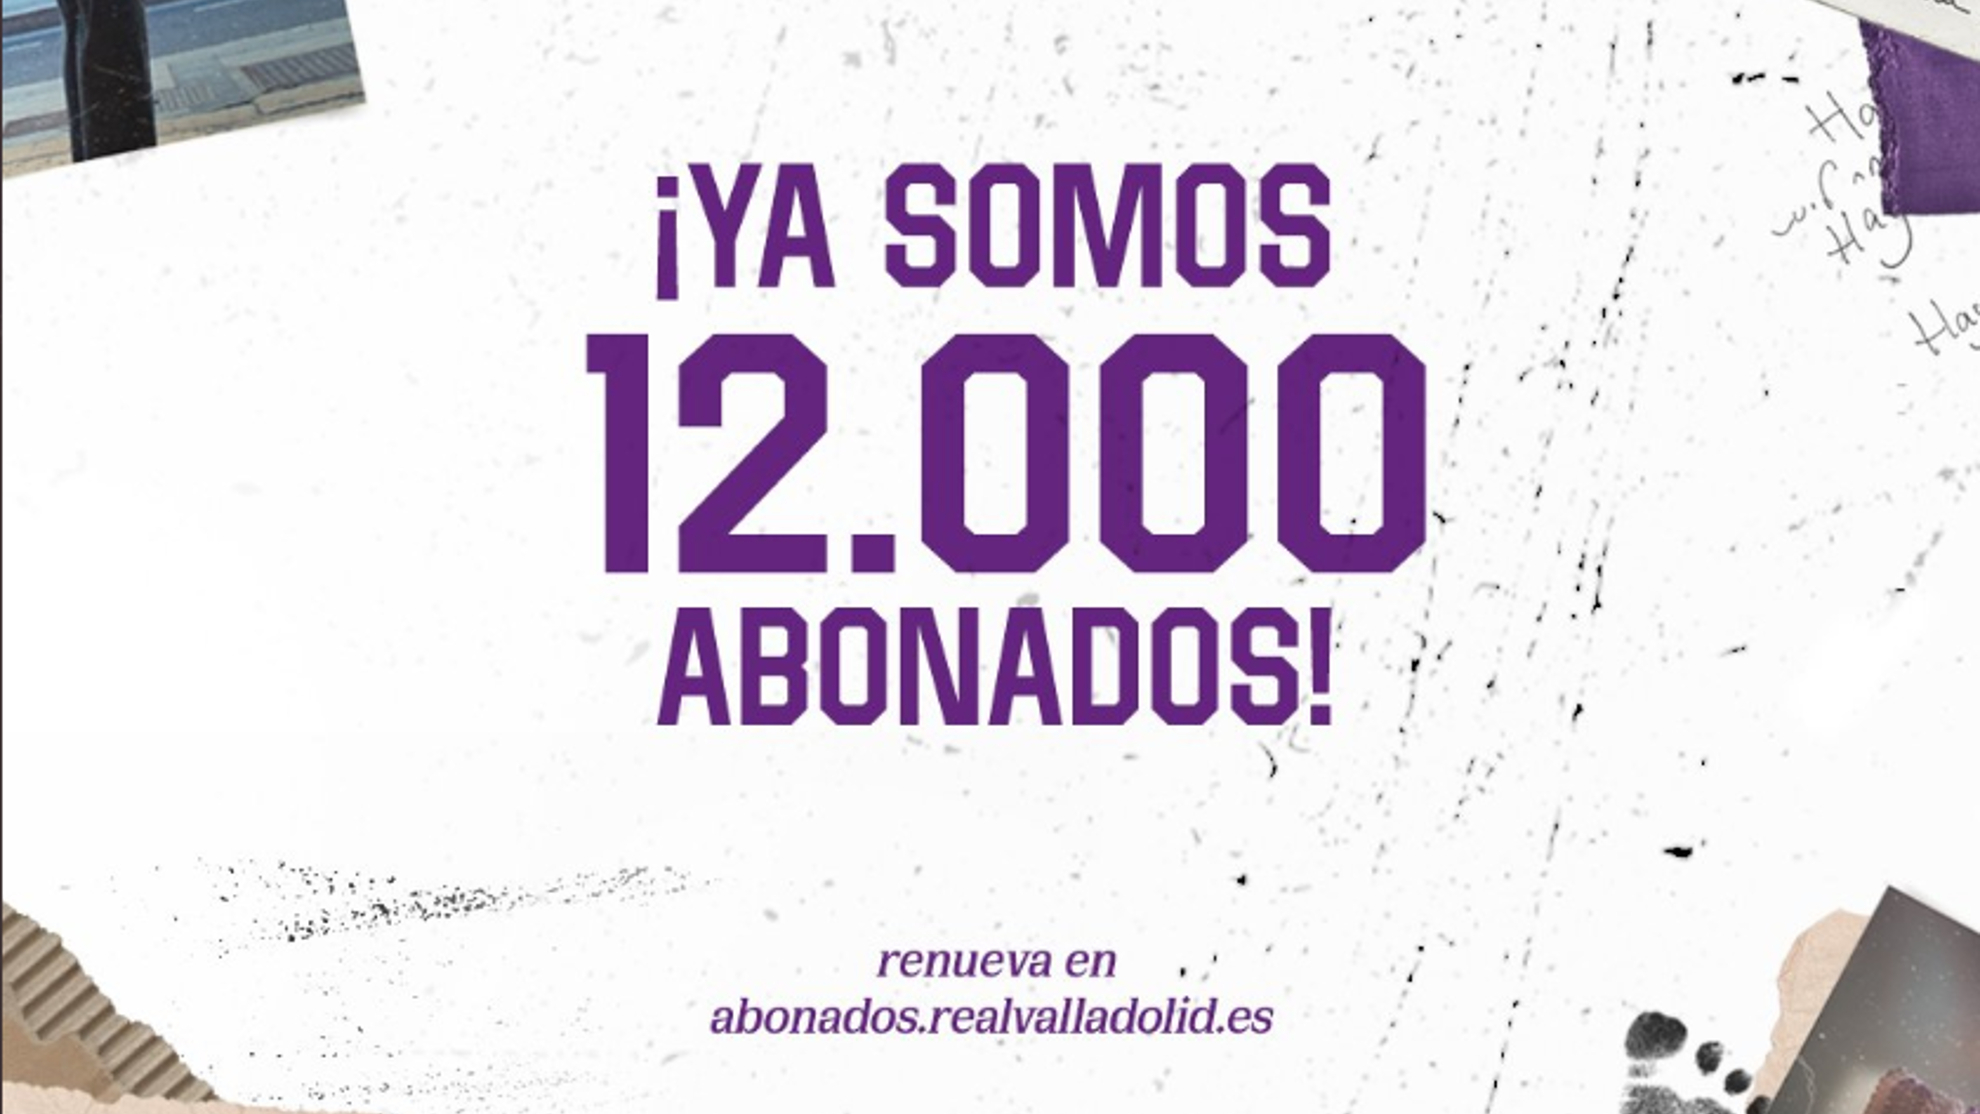 El Valladolid supera los 12.000 abonados